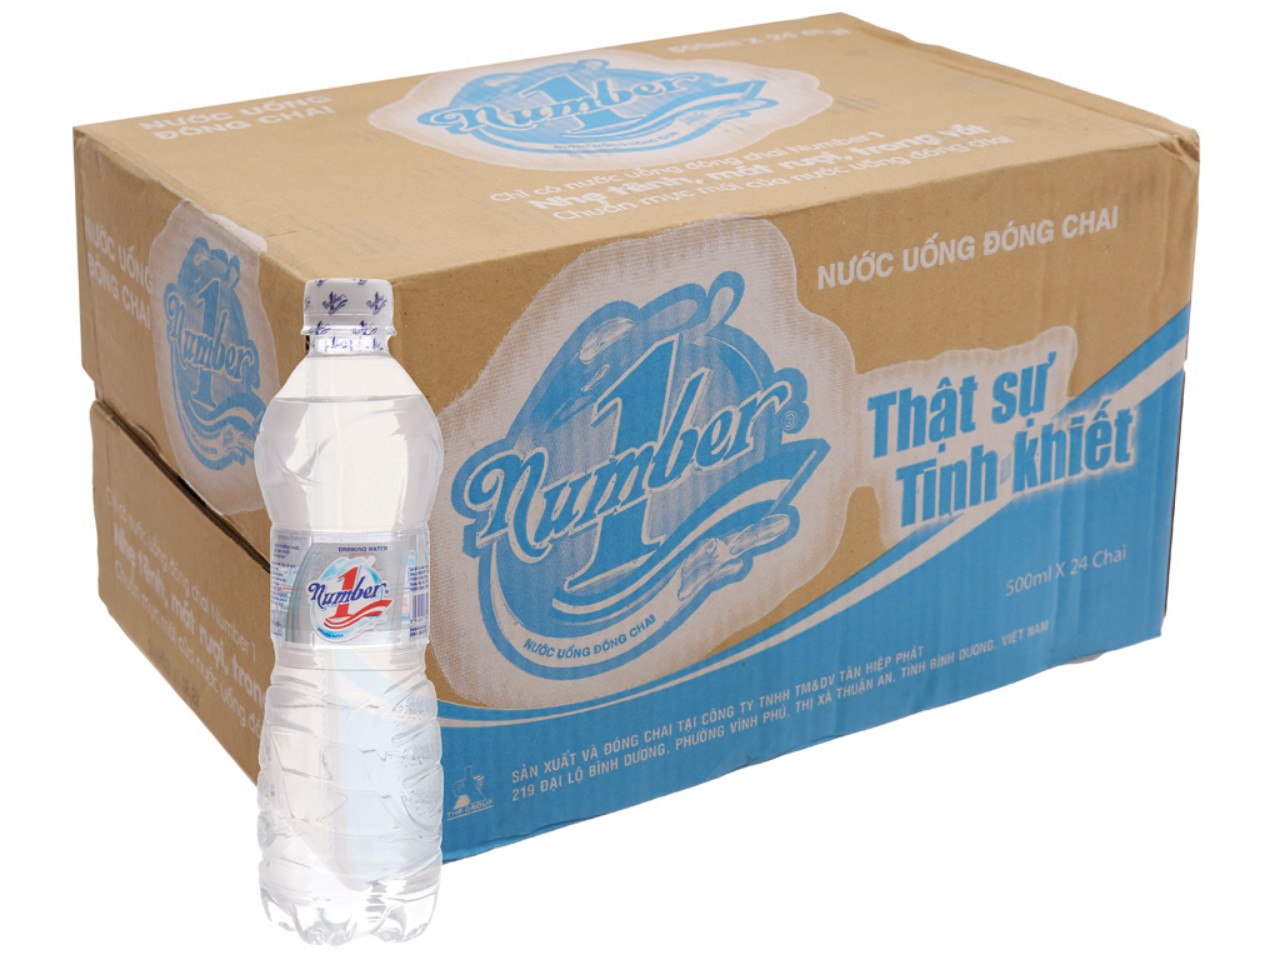 Phân phối nước tinh khiết Number One 500ml giá tốt tại Bà Rịa Vũng Tàu